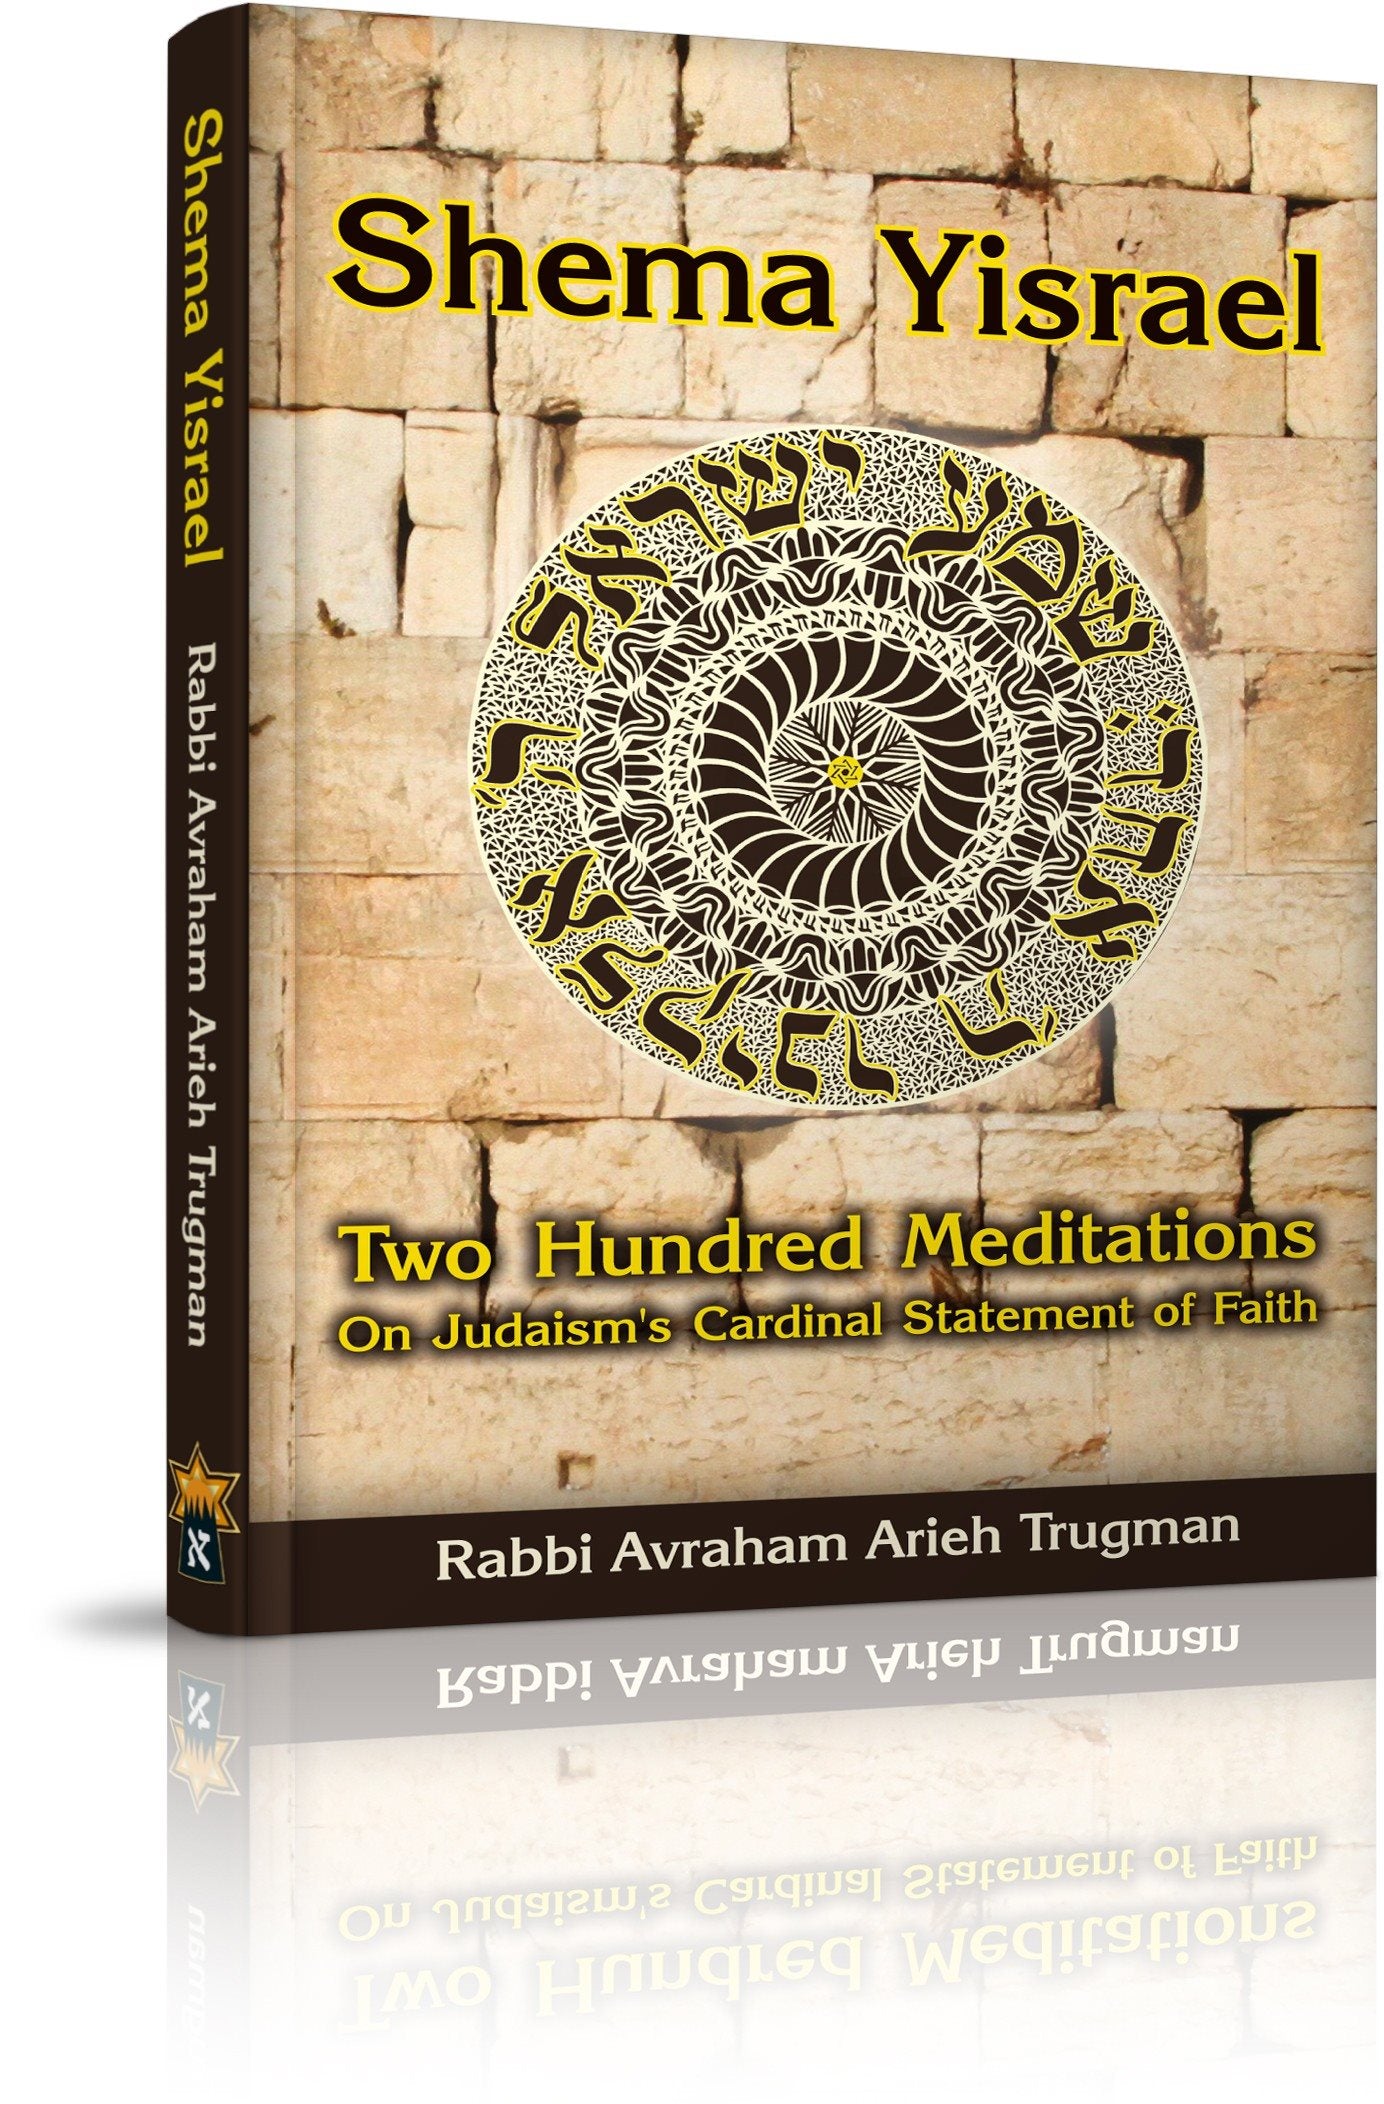 Shema Yisrael - 200 Meditations (Rabbi Avraham Arieh Trugman)